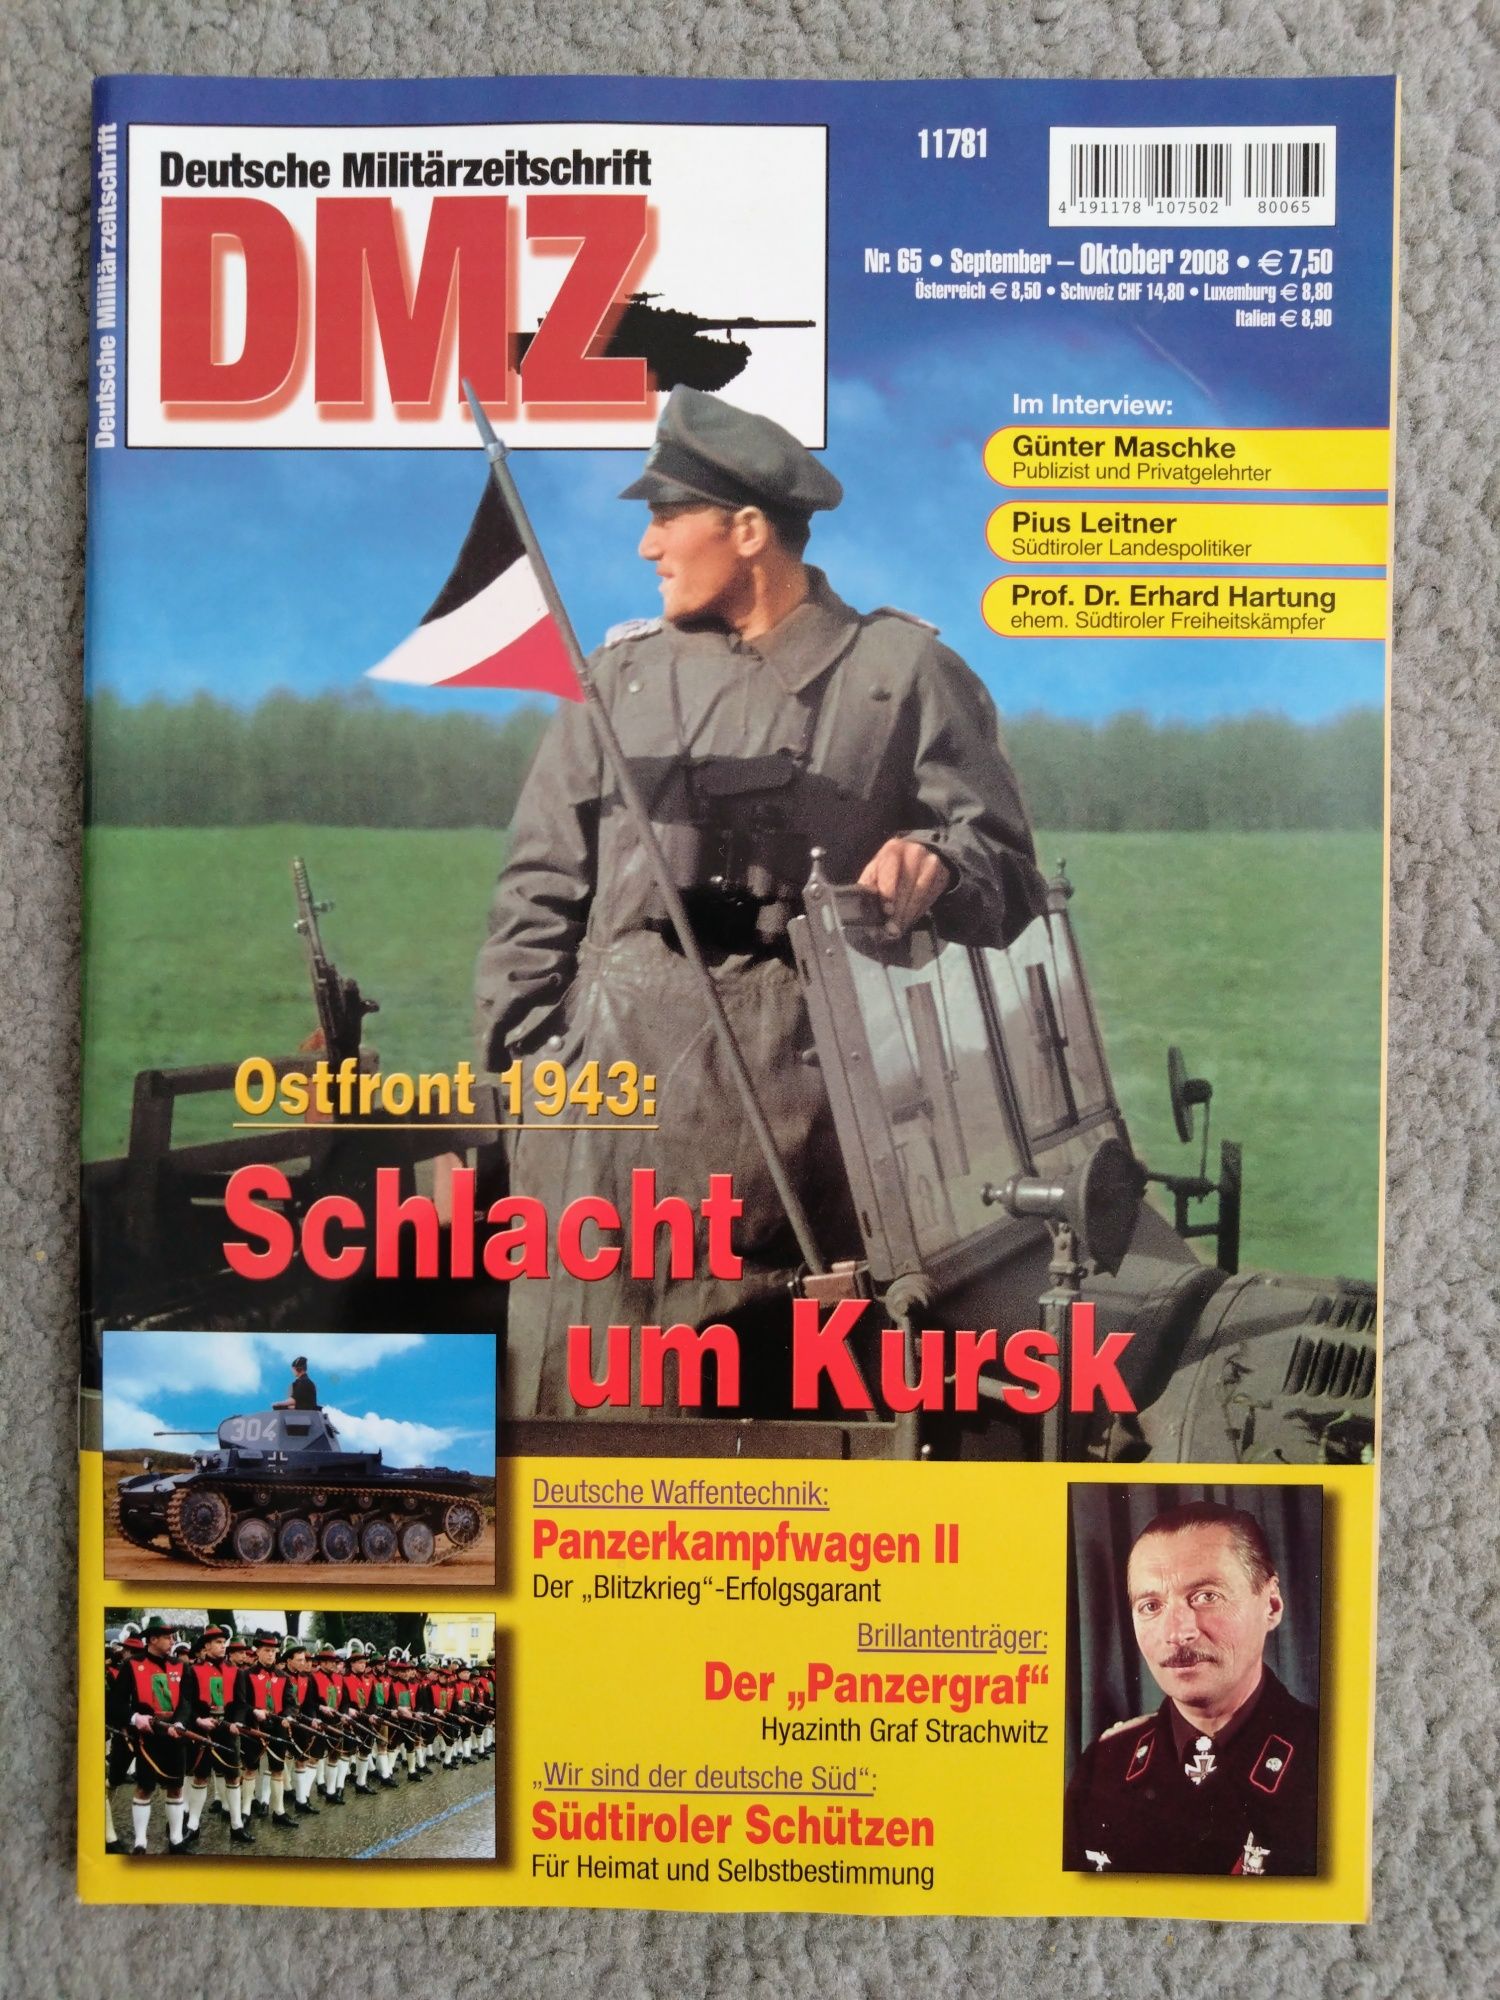 DMZ Deutsche Militarzeitschrift - 2008 rok 4 sztuki.